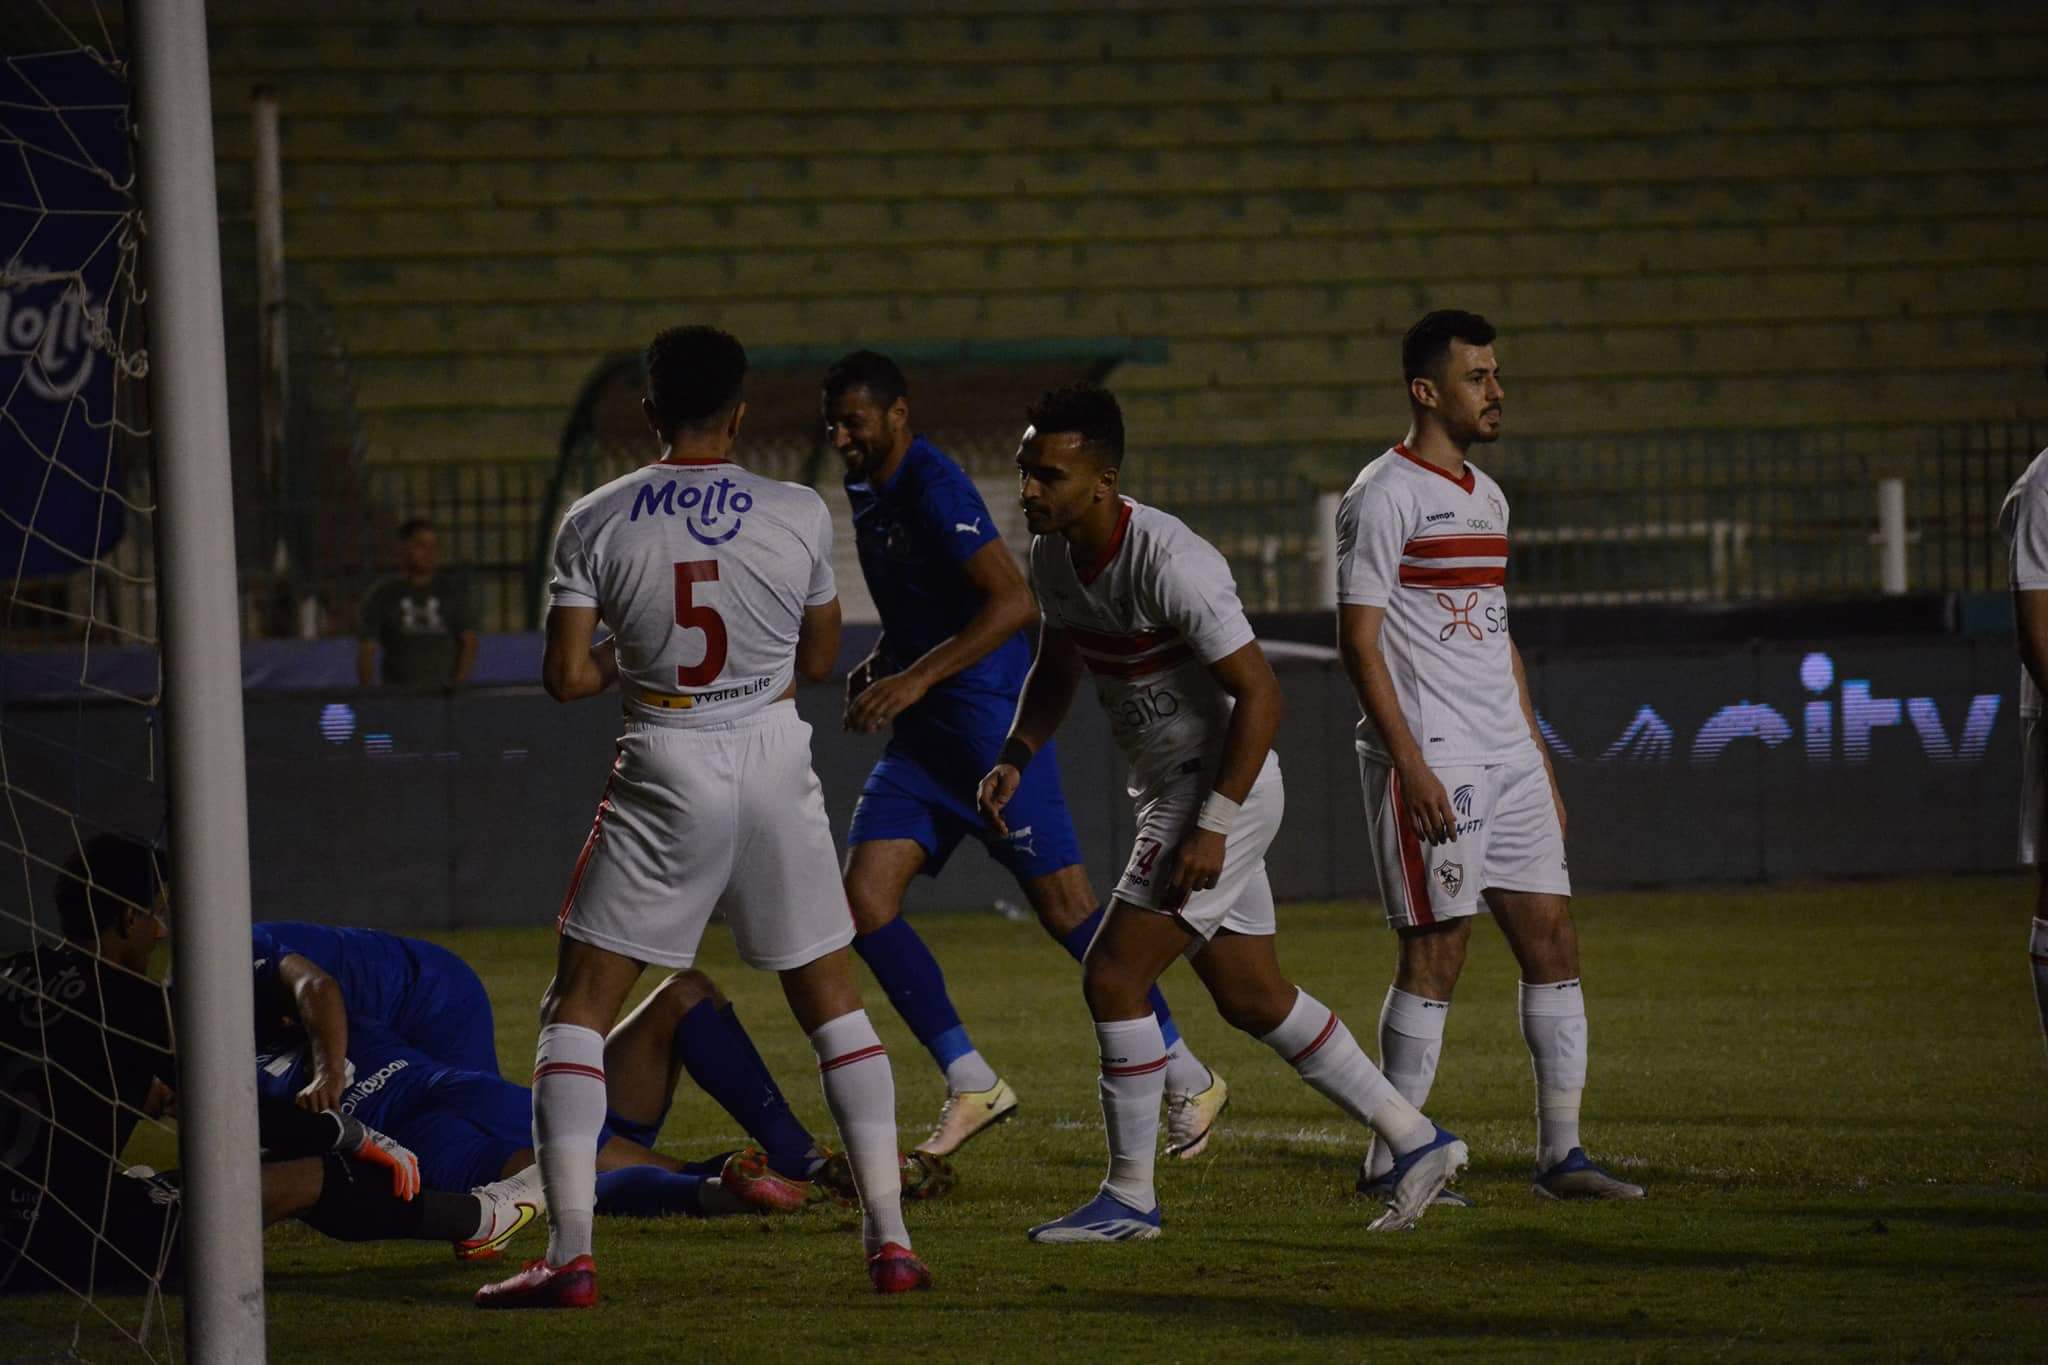 صورة كأس مصر | الزمالك يتقدم على اسوان في شوط اللقاء الأول بهد فين مقابل هدف